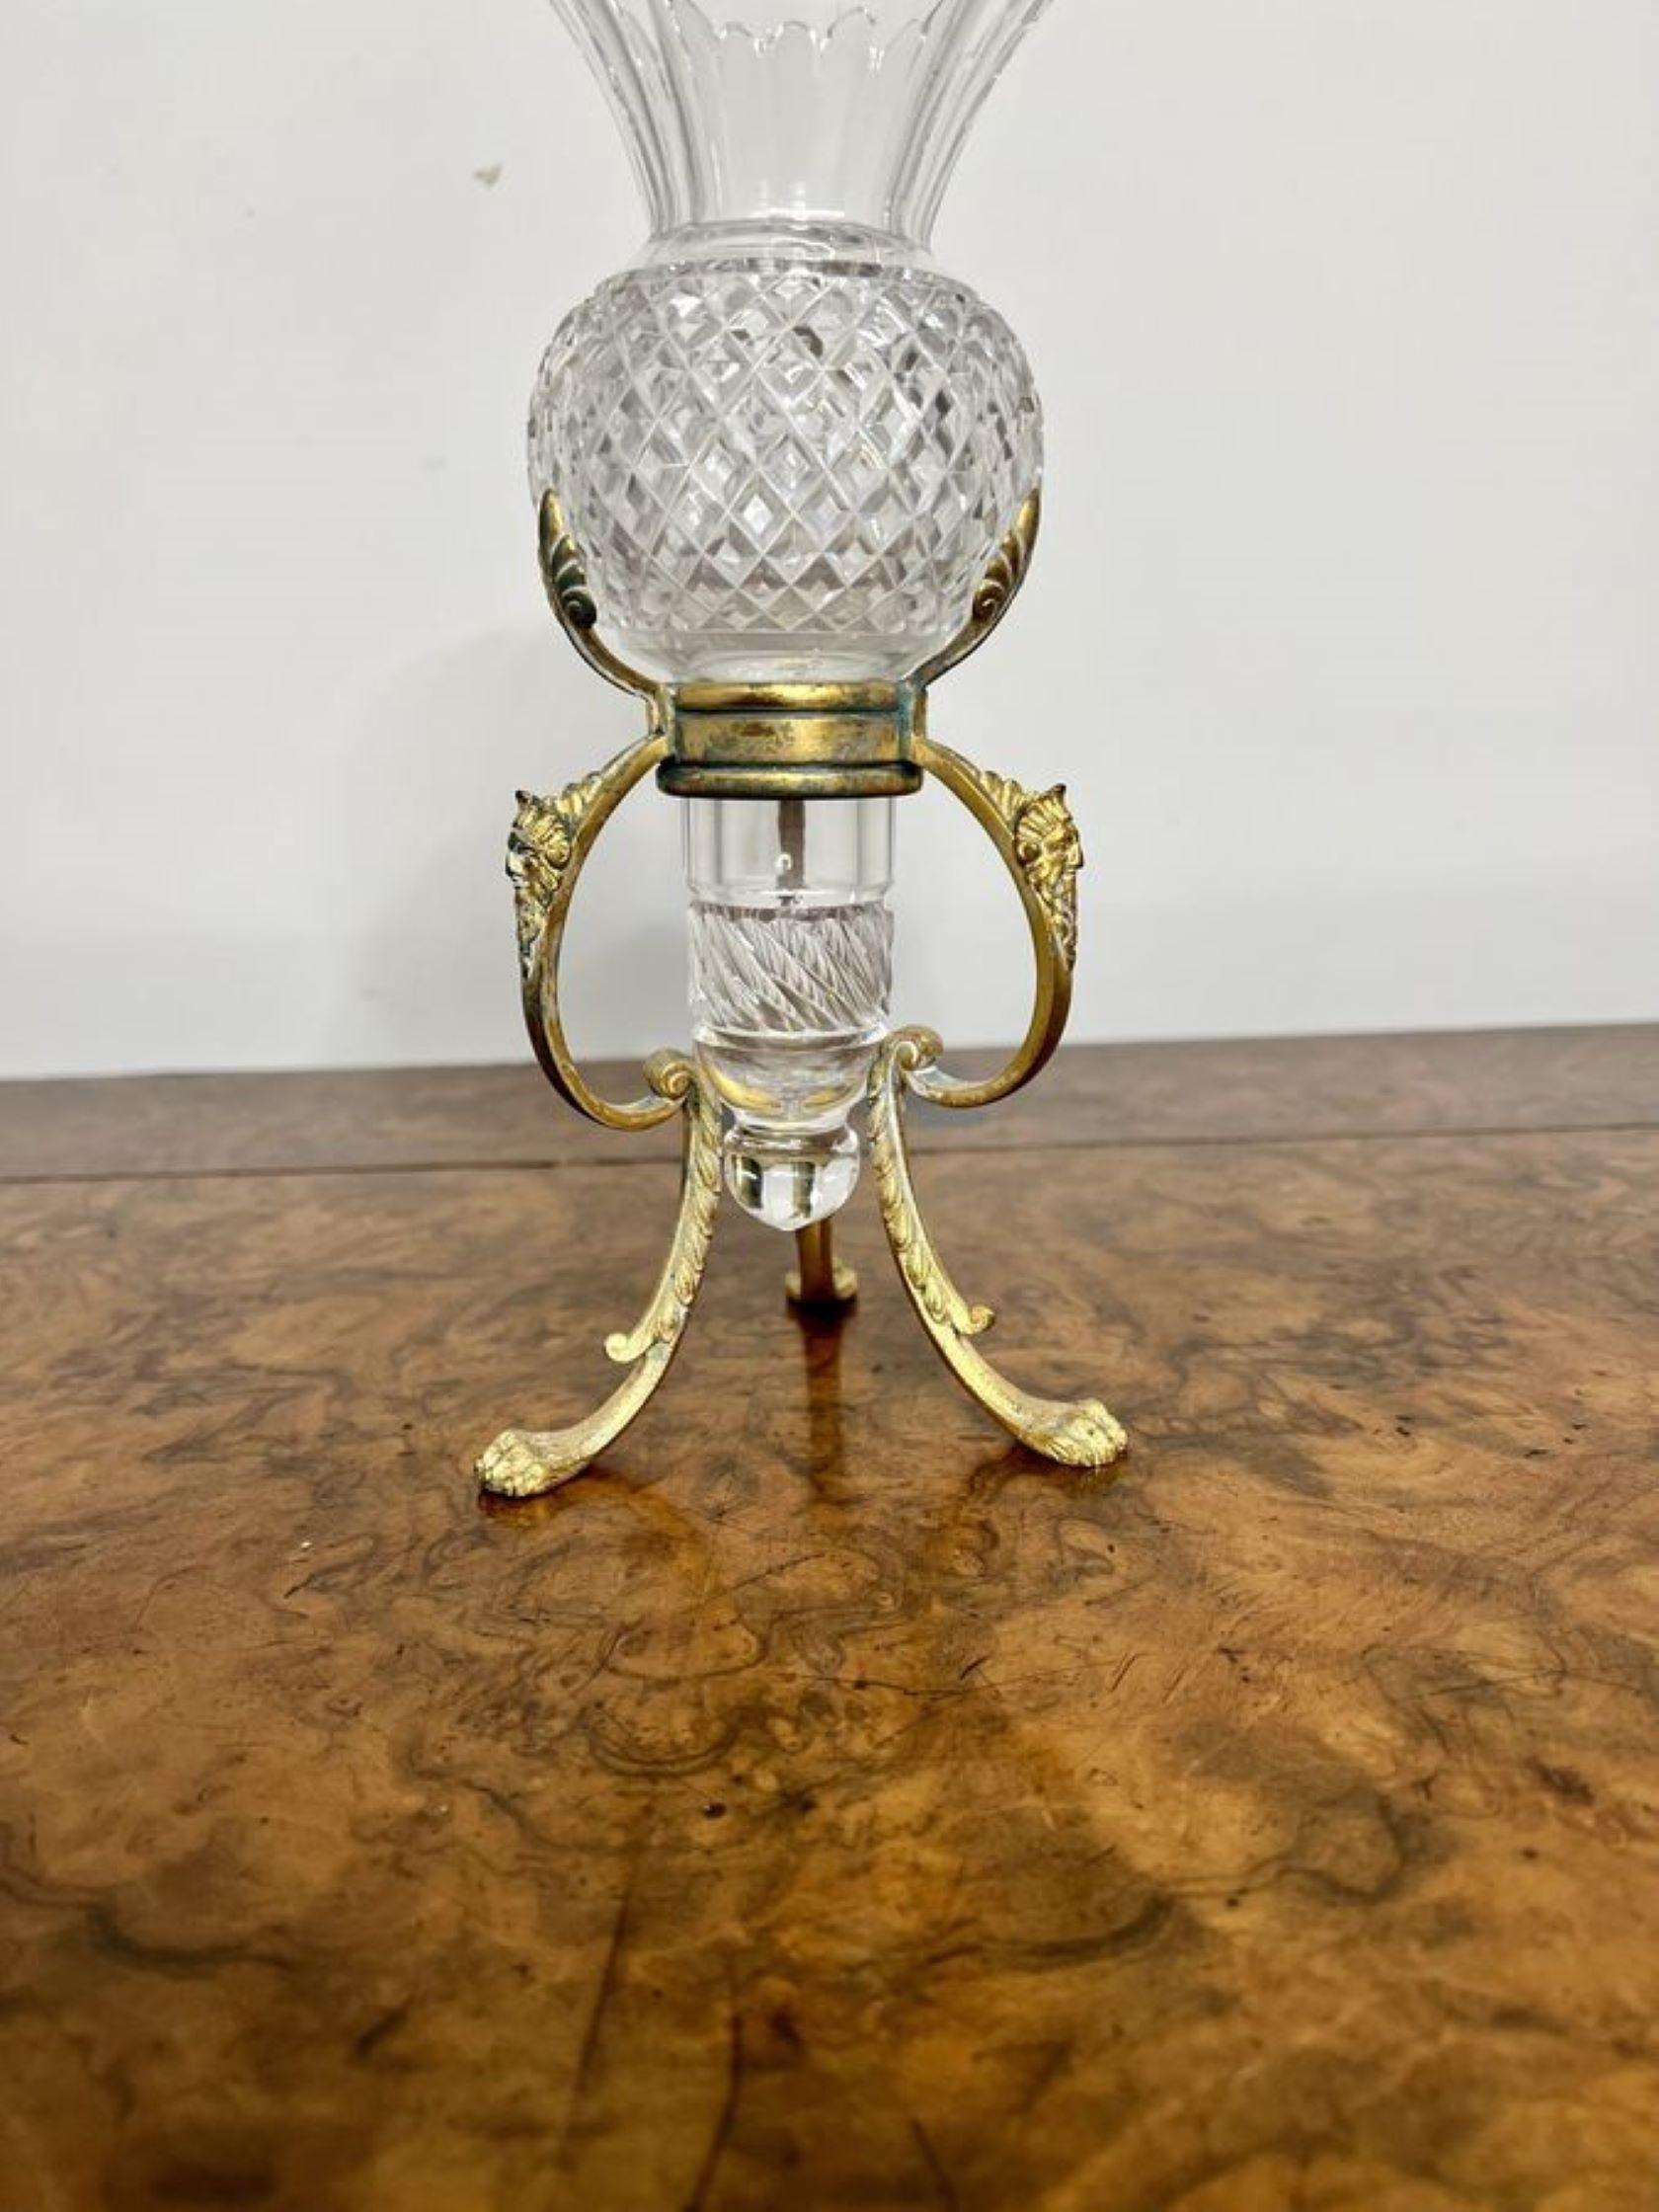 Joli vase antique en verre taillé sur un support orné d'un vase amovible en verre taillé de qualité avec un fantastique sommet en forme de cannelure sur un support en métal orné reposant sur des pieds en forme de pattes.

D. 1900